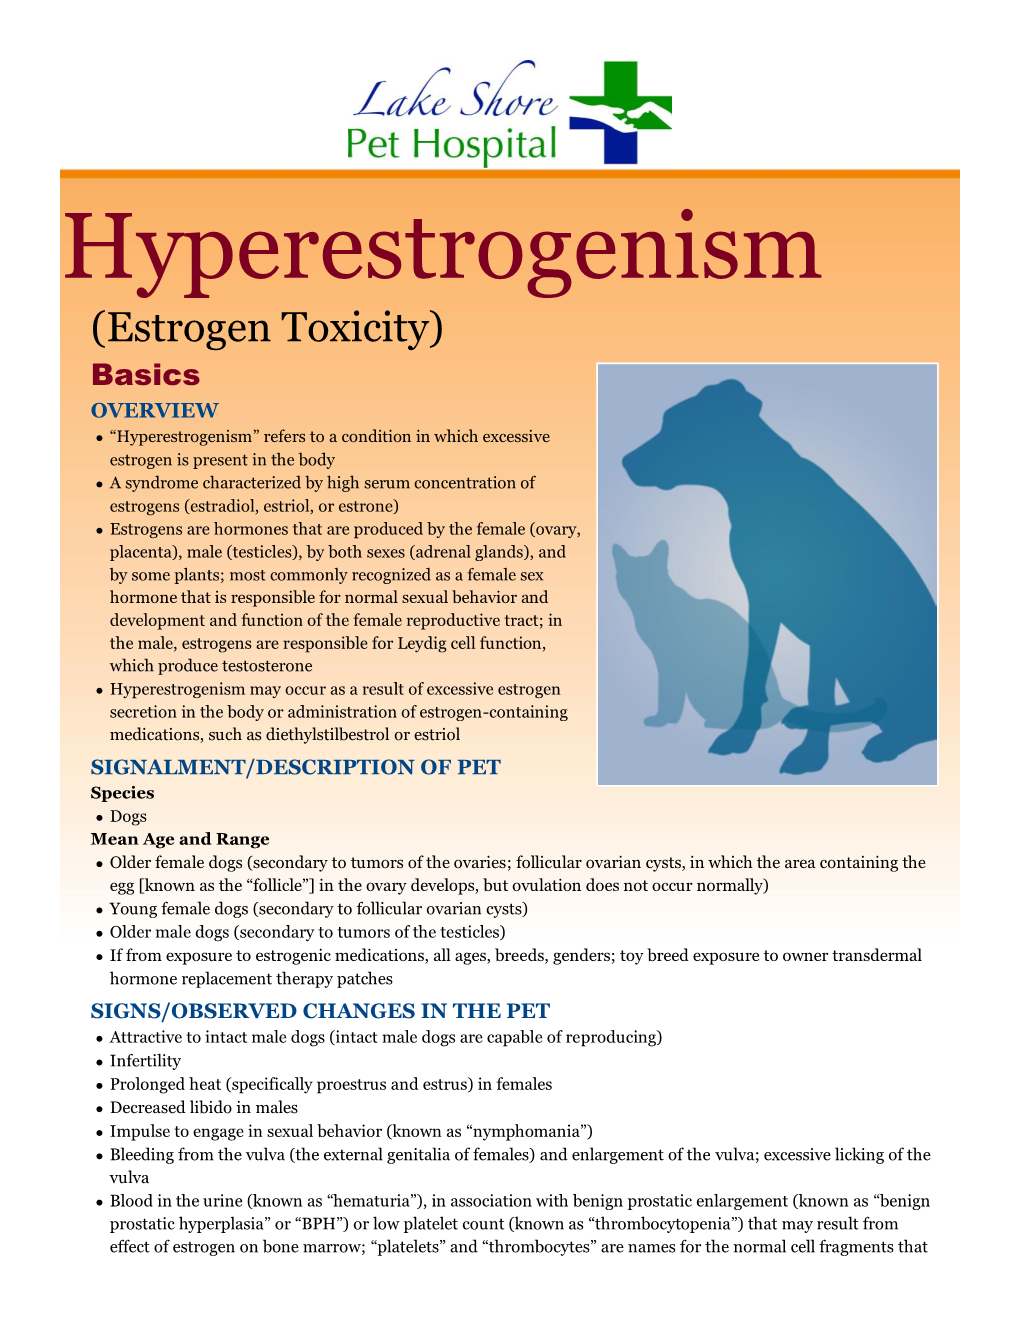 Hyperestrogenism